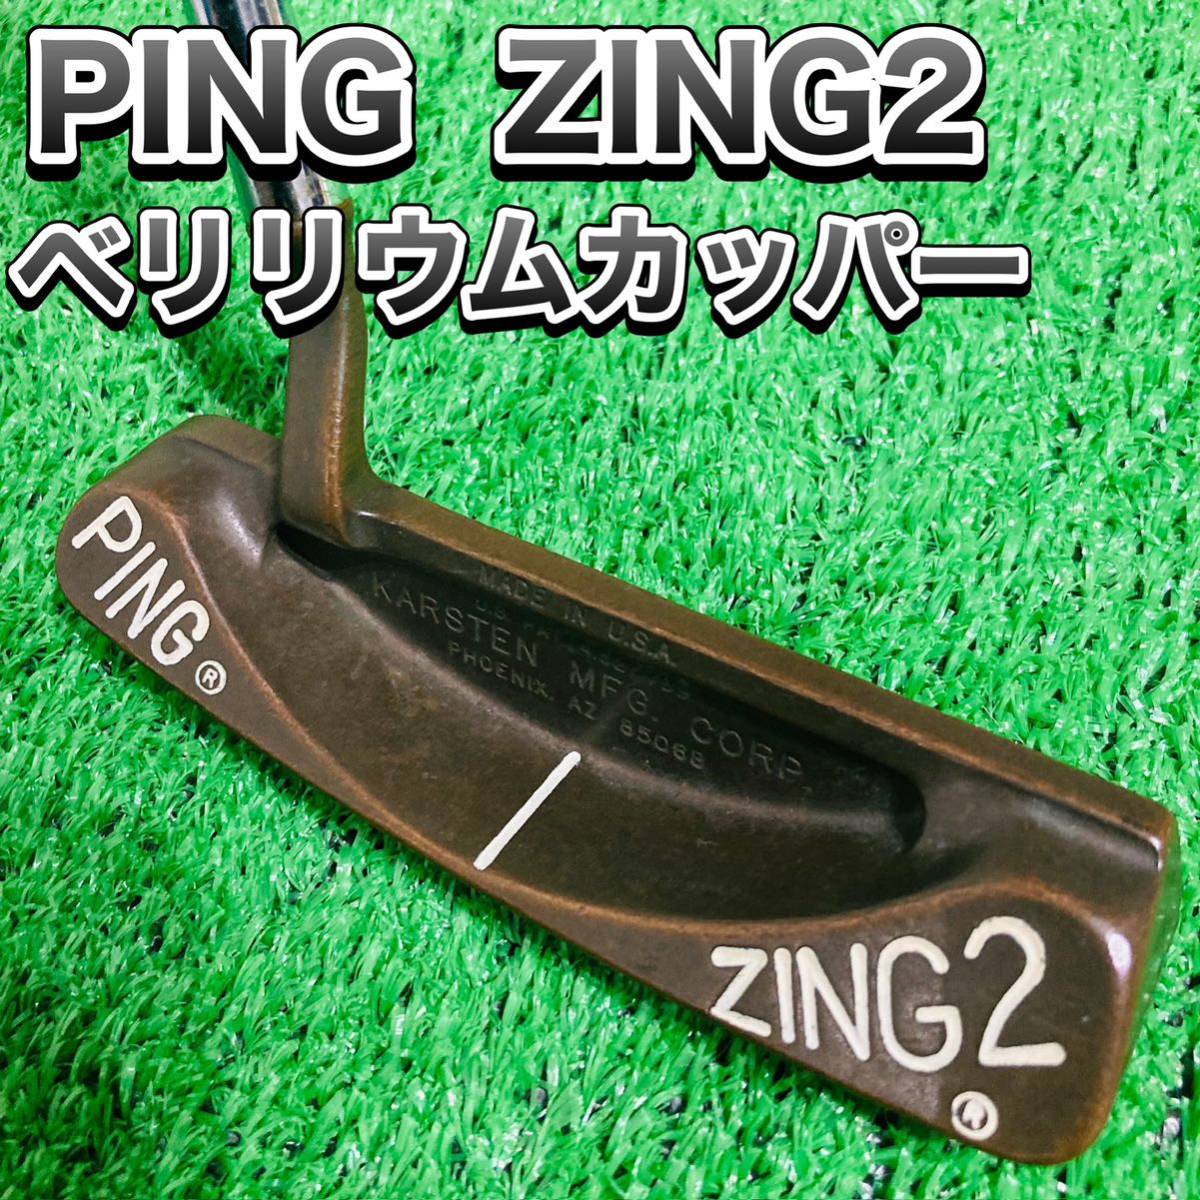 PING ZING2 ベリリウムカッパー 35inch 日本仕様-